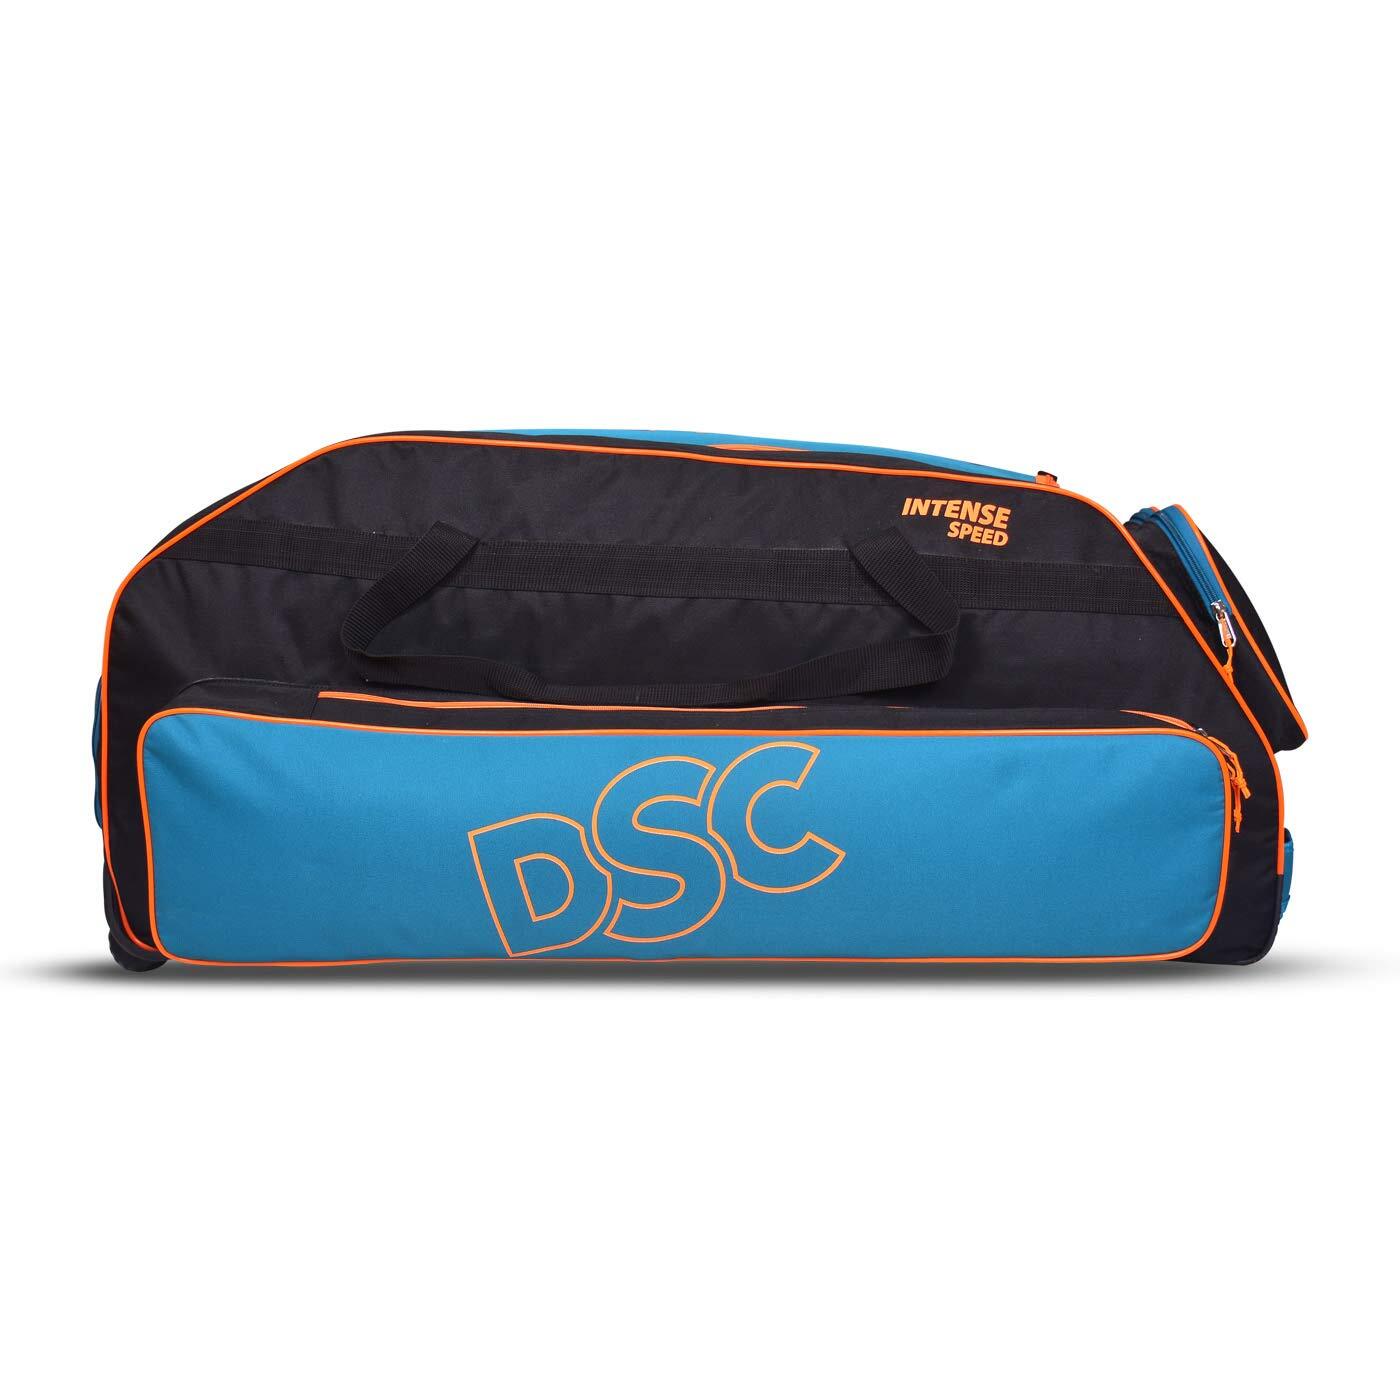 DSC DSC 1500377 Intense Speed Cricket Bag